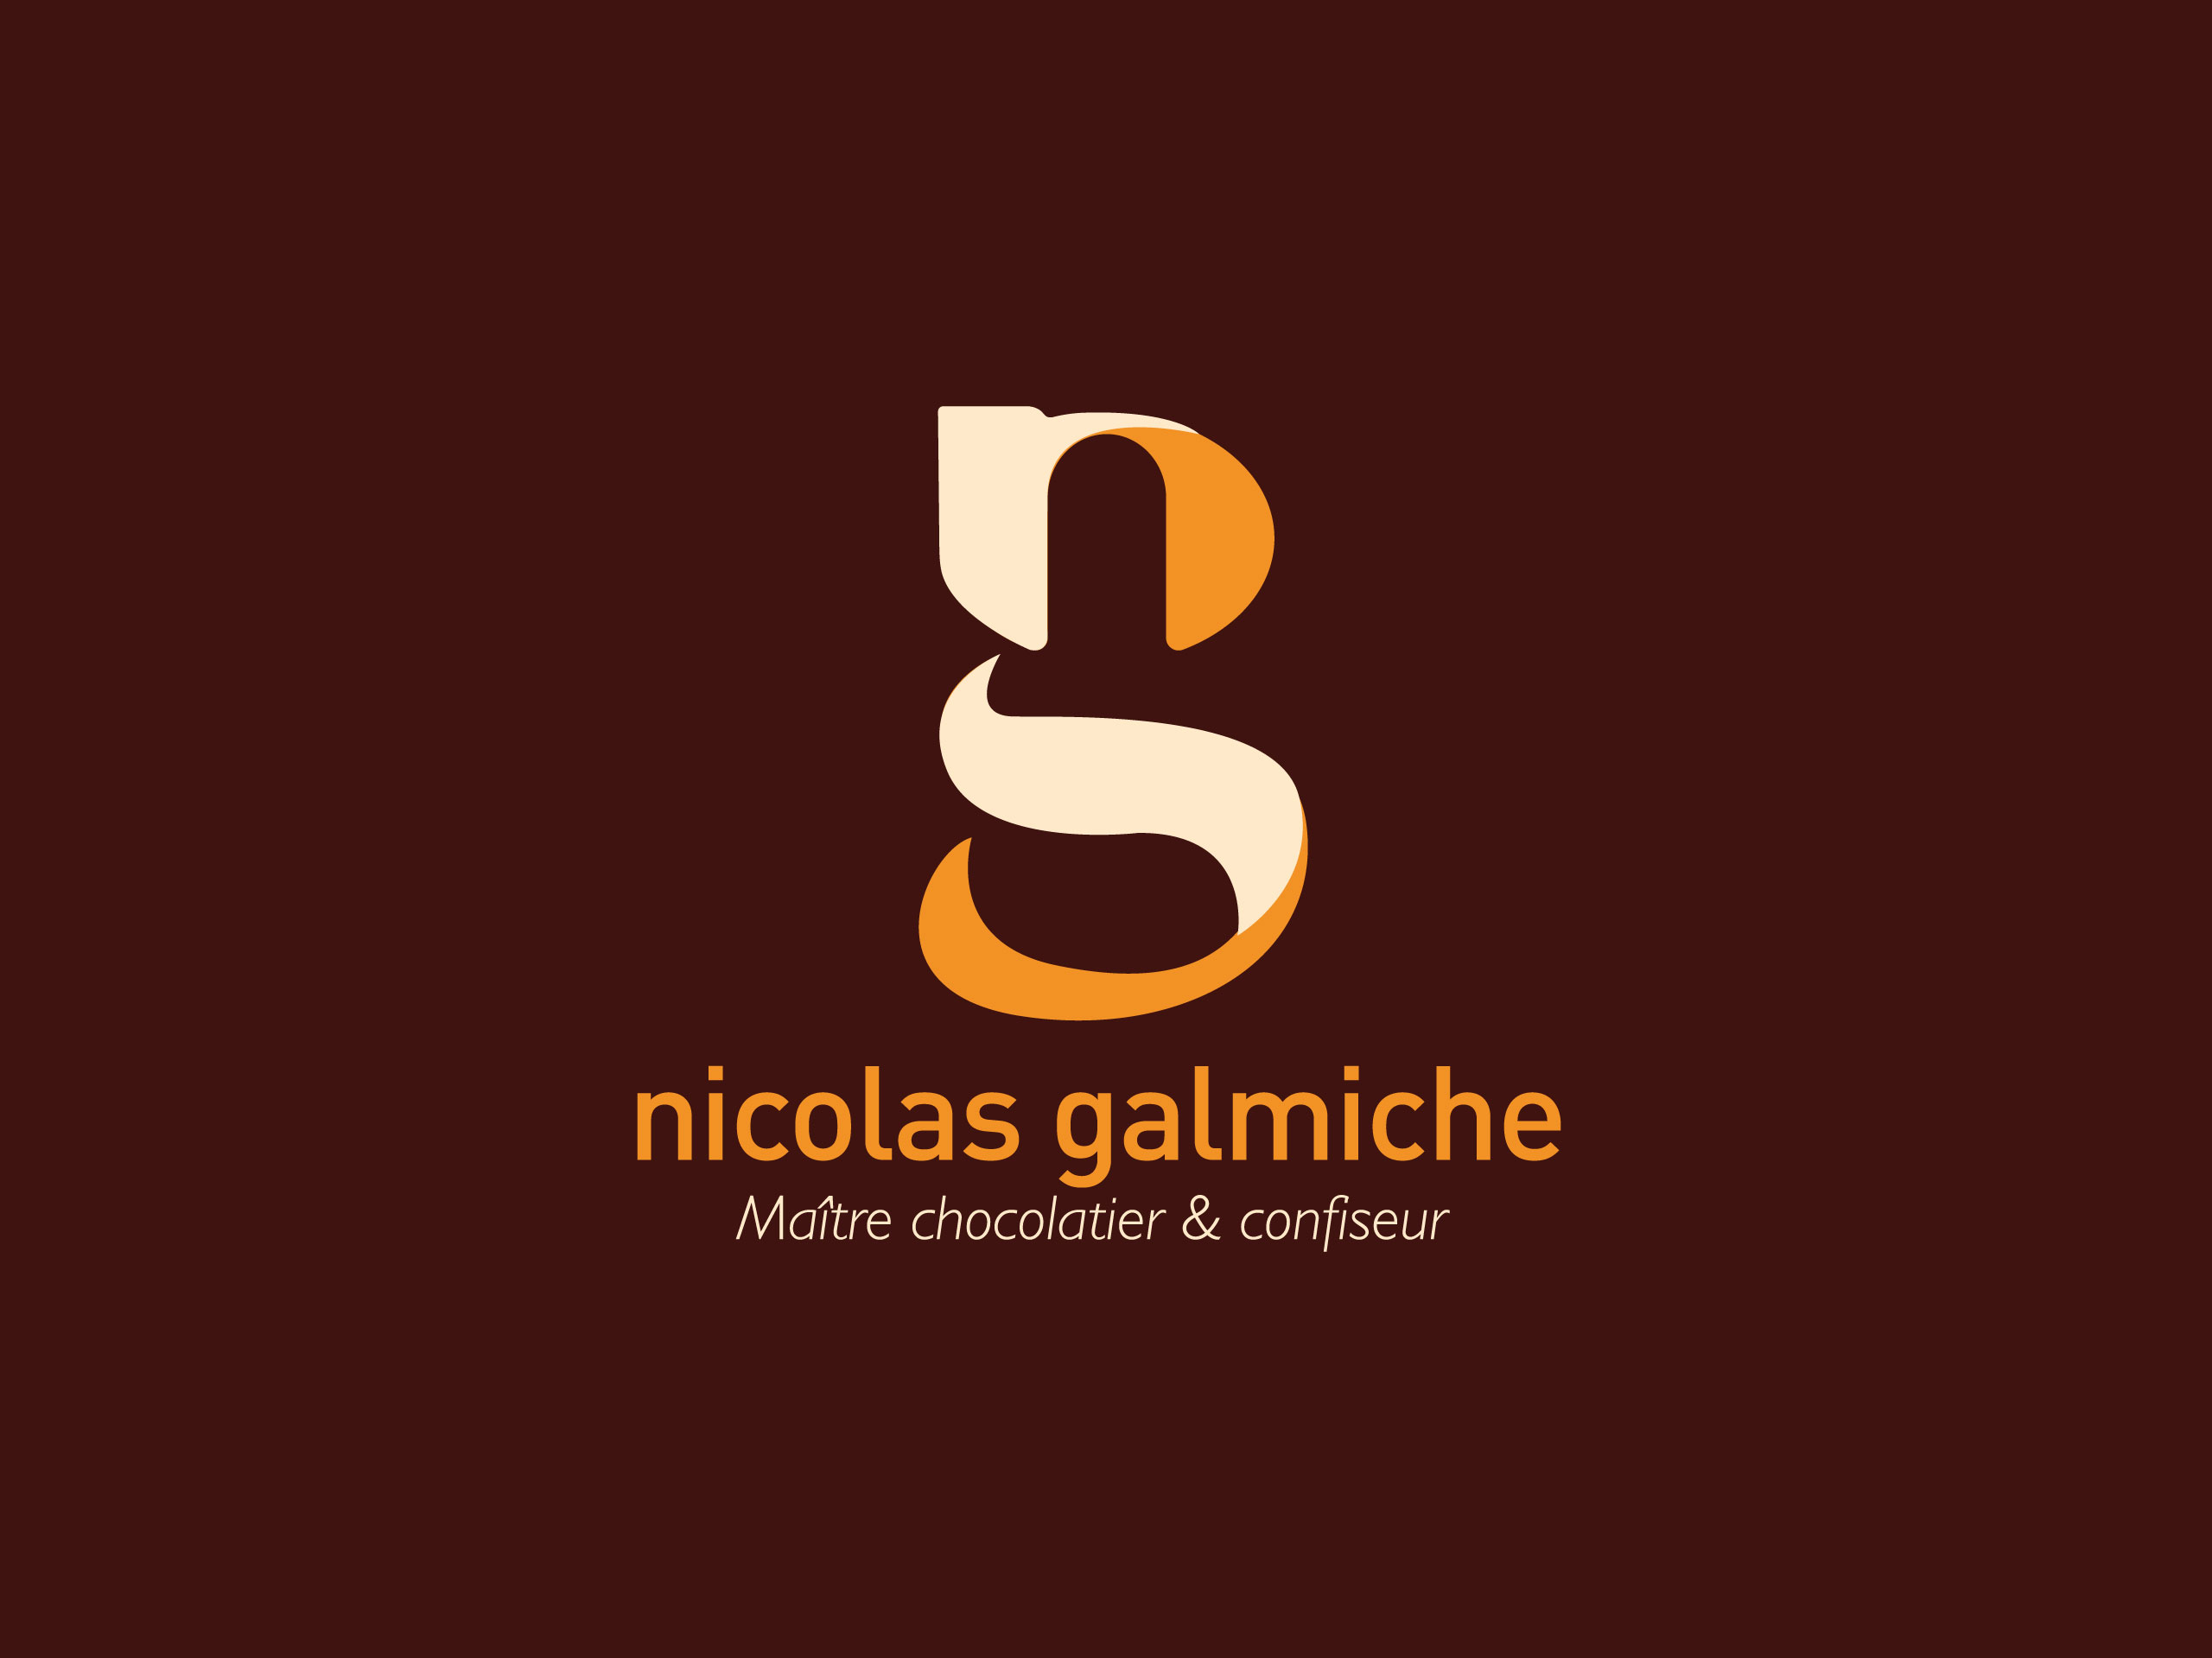 Nicolas Galmiche